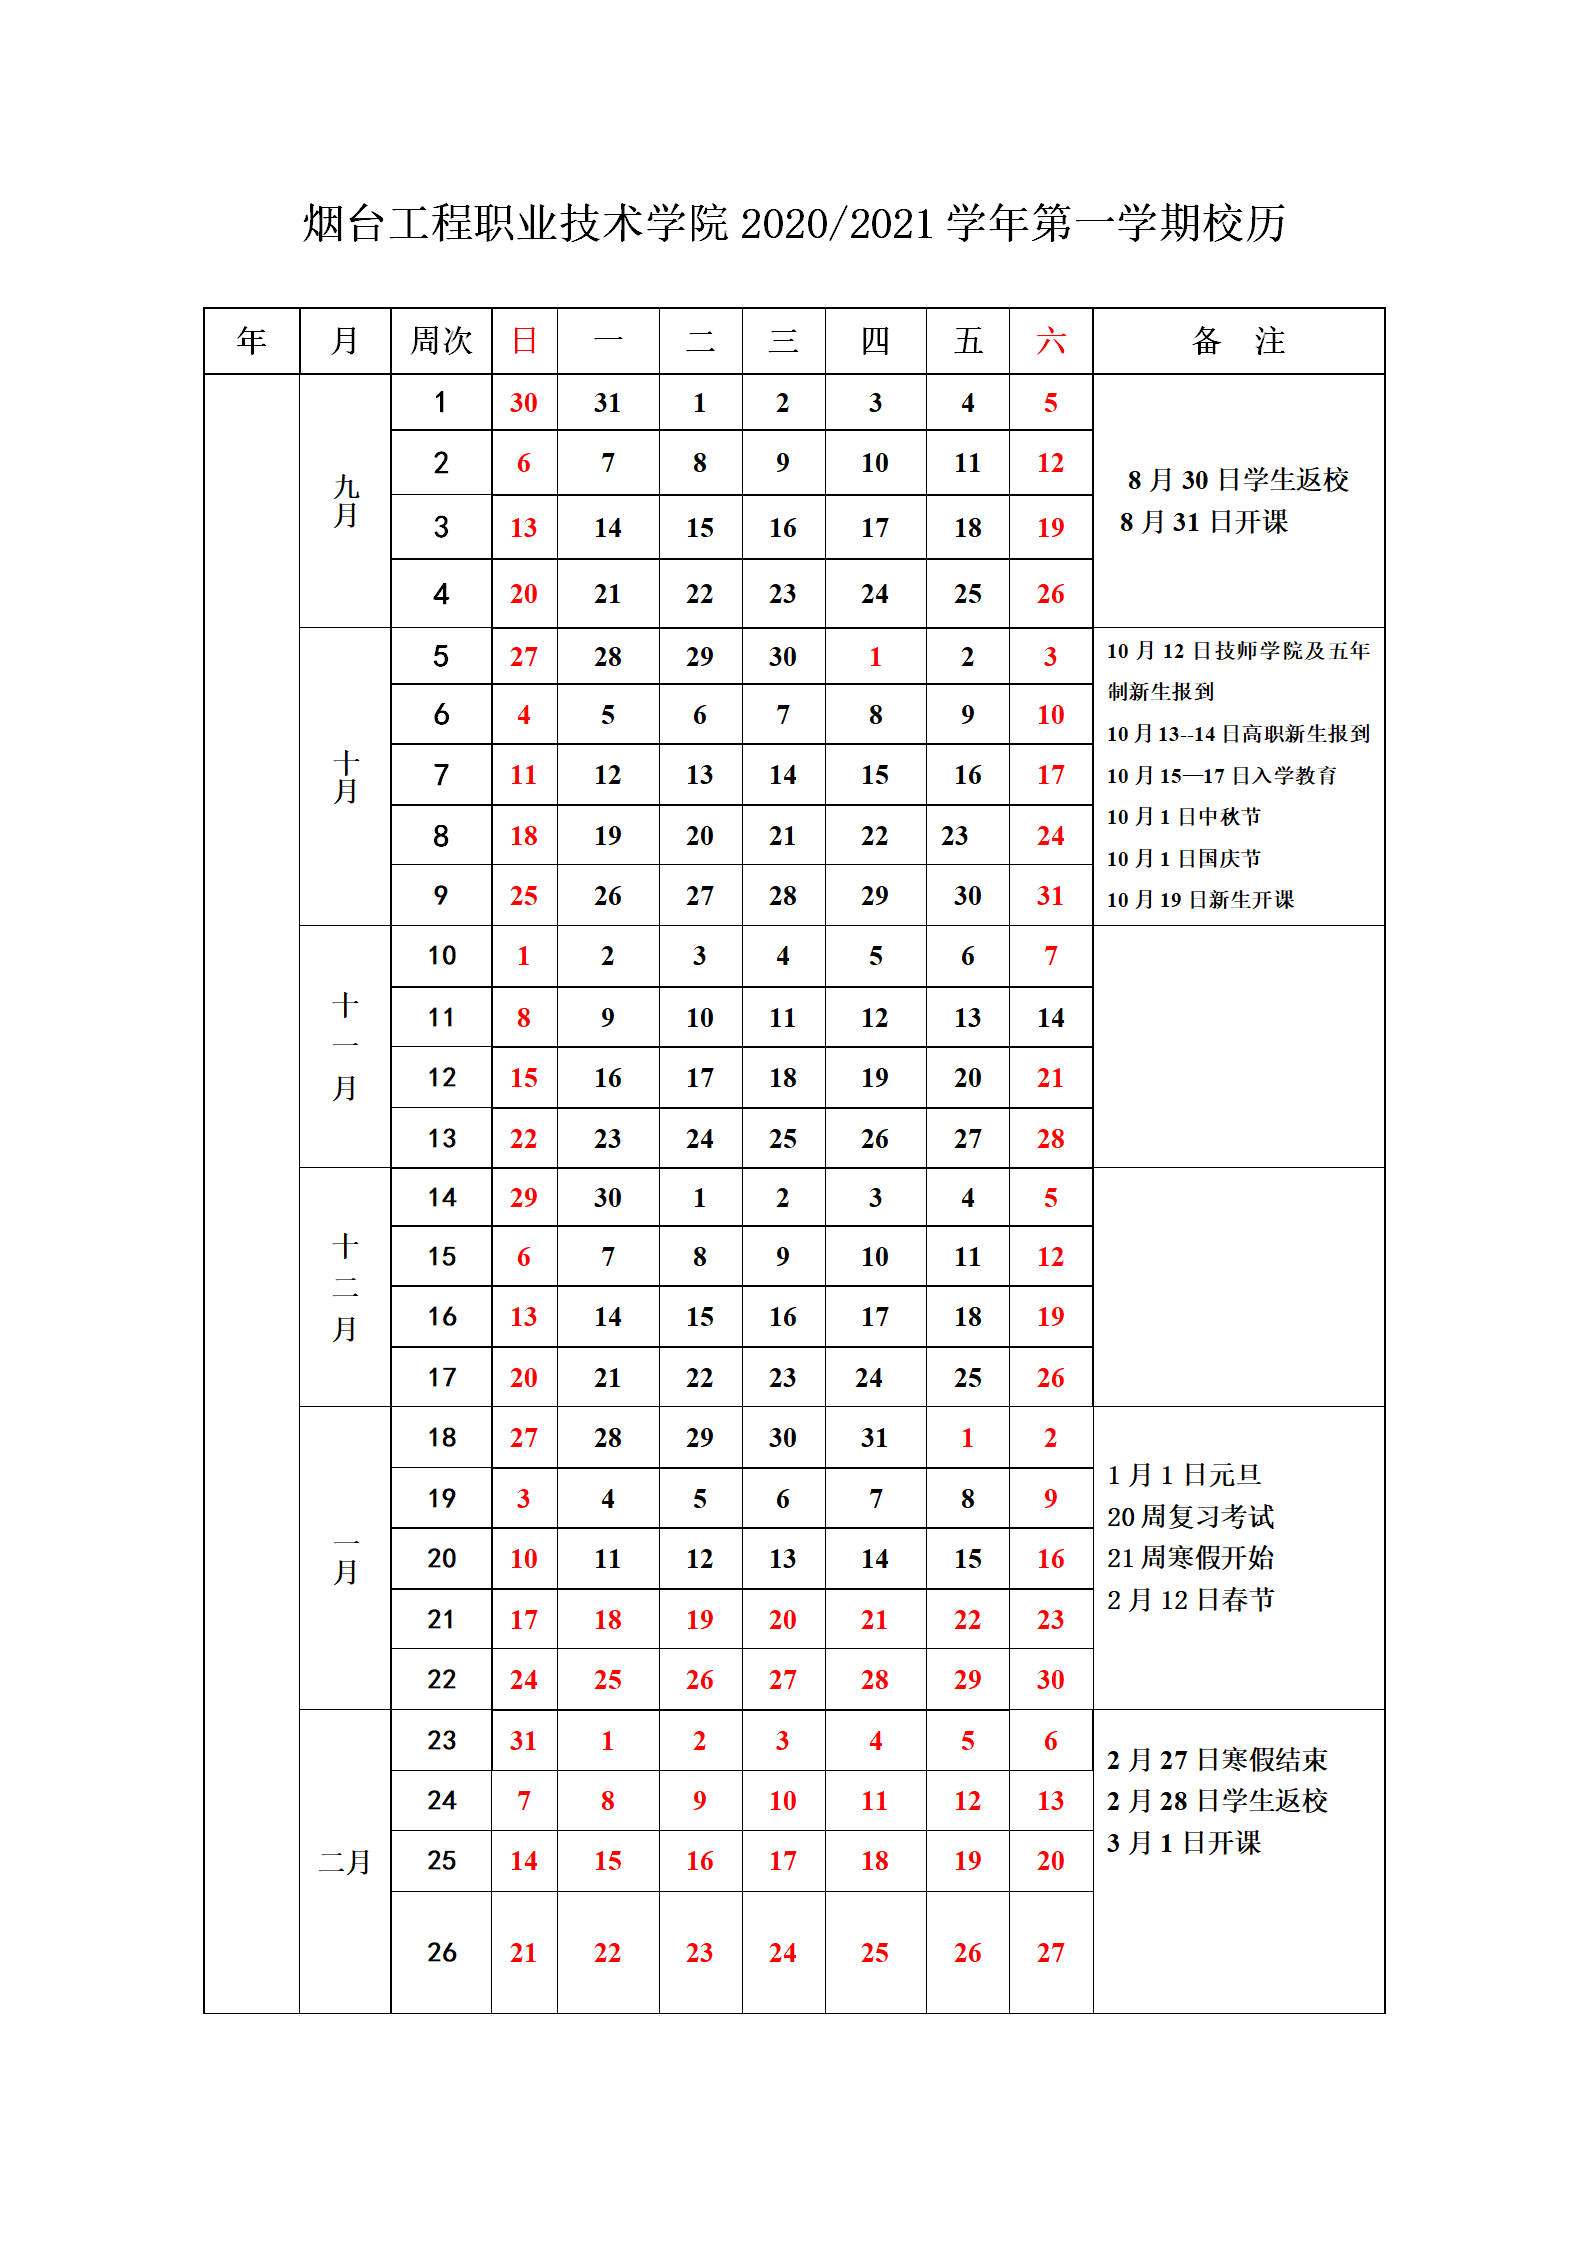 大庄家彩票2020--2021学年校历(1)_01.png